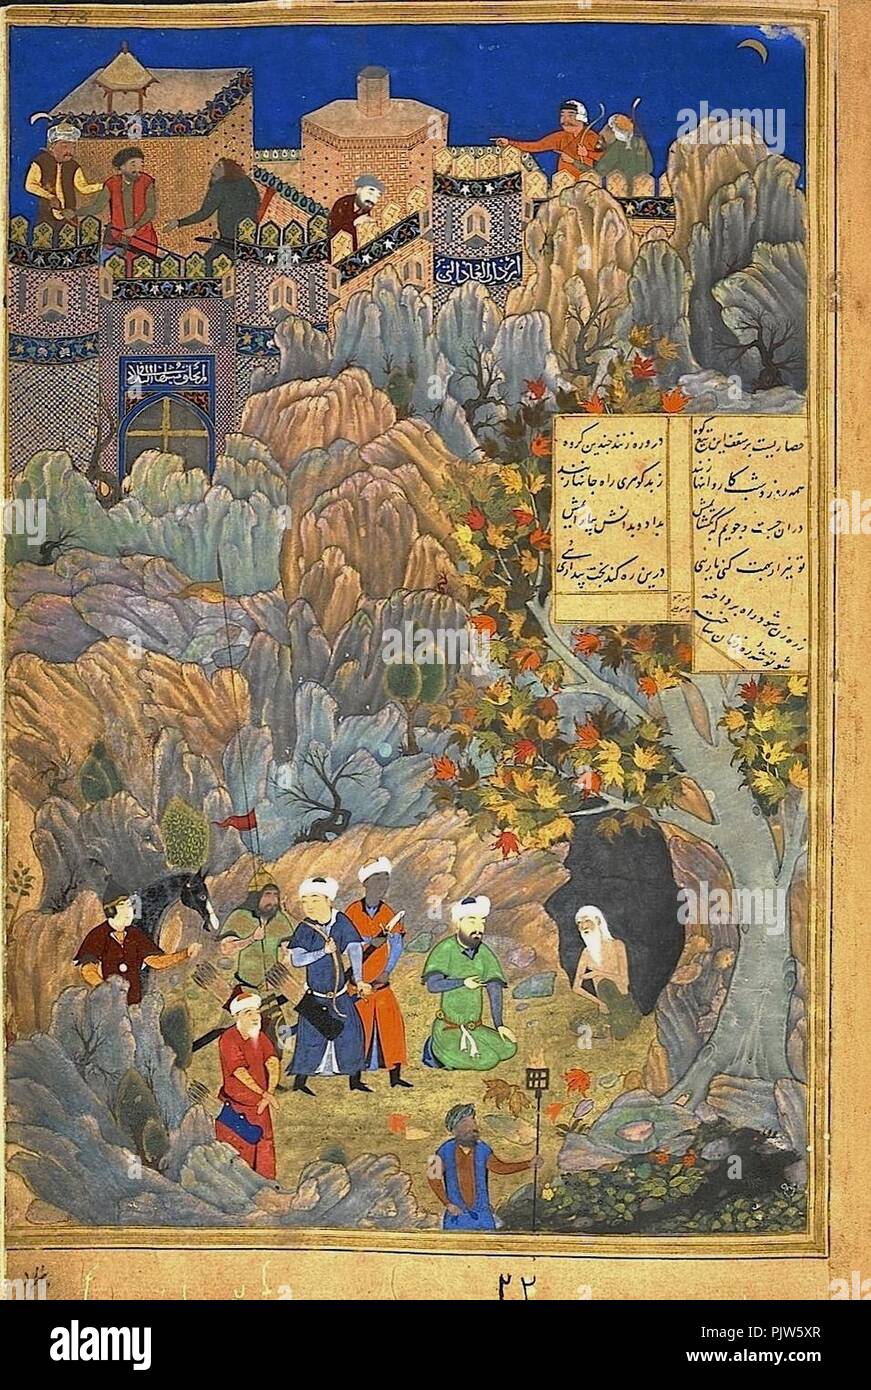 Behzad ou Qasim Ali. Iskandar, à l'image de Husayn Bayqara, visiter l'homme sage dans une grotte. Attribuée à Bihzad en dessous, mais pour ʻAli Oasim dans le panneau de texte.. Banque D'Images